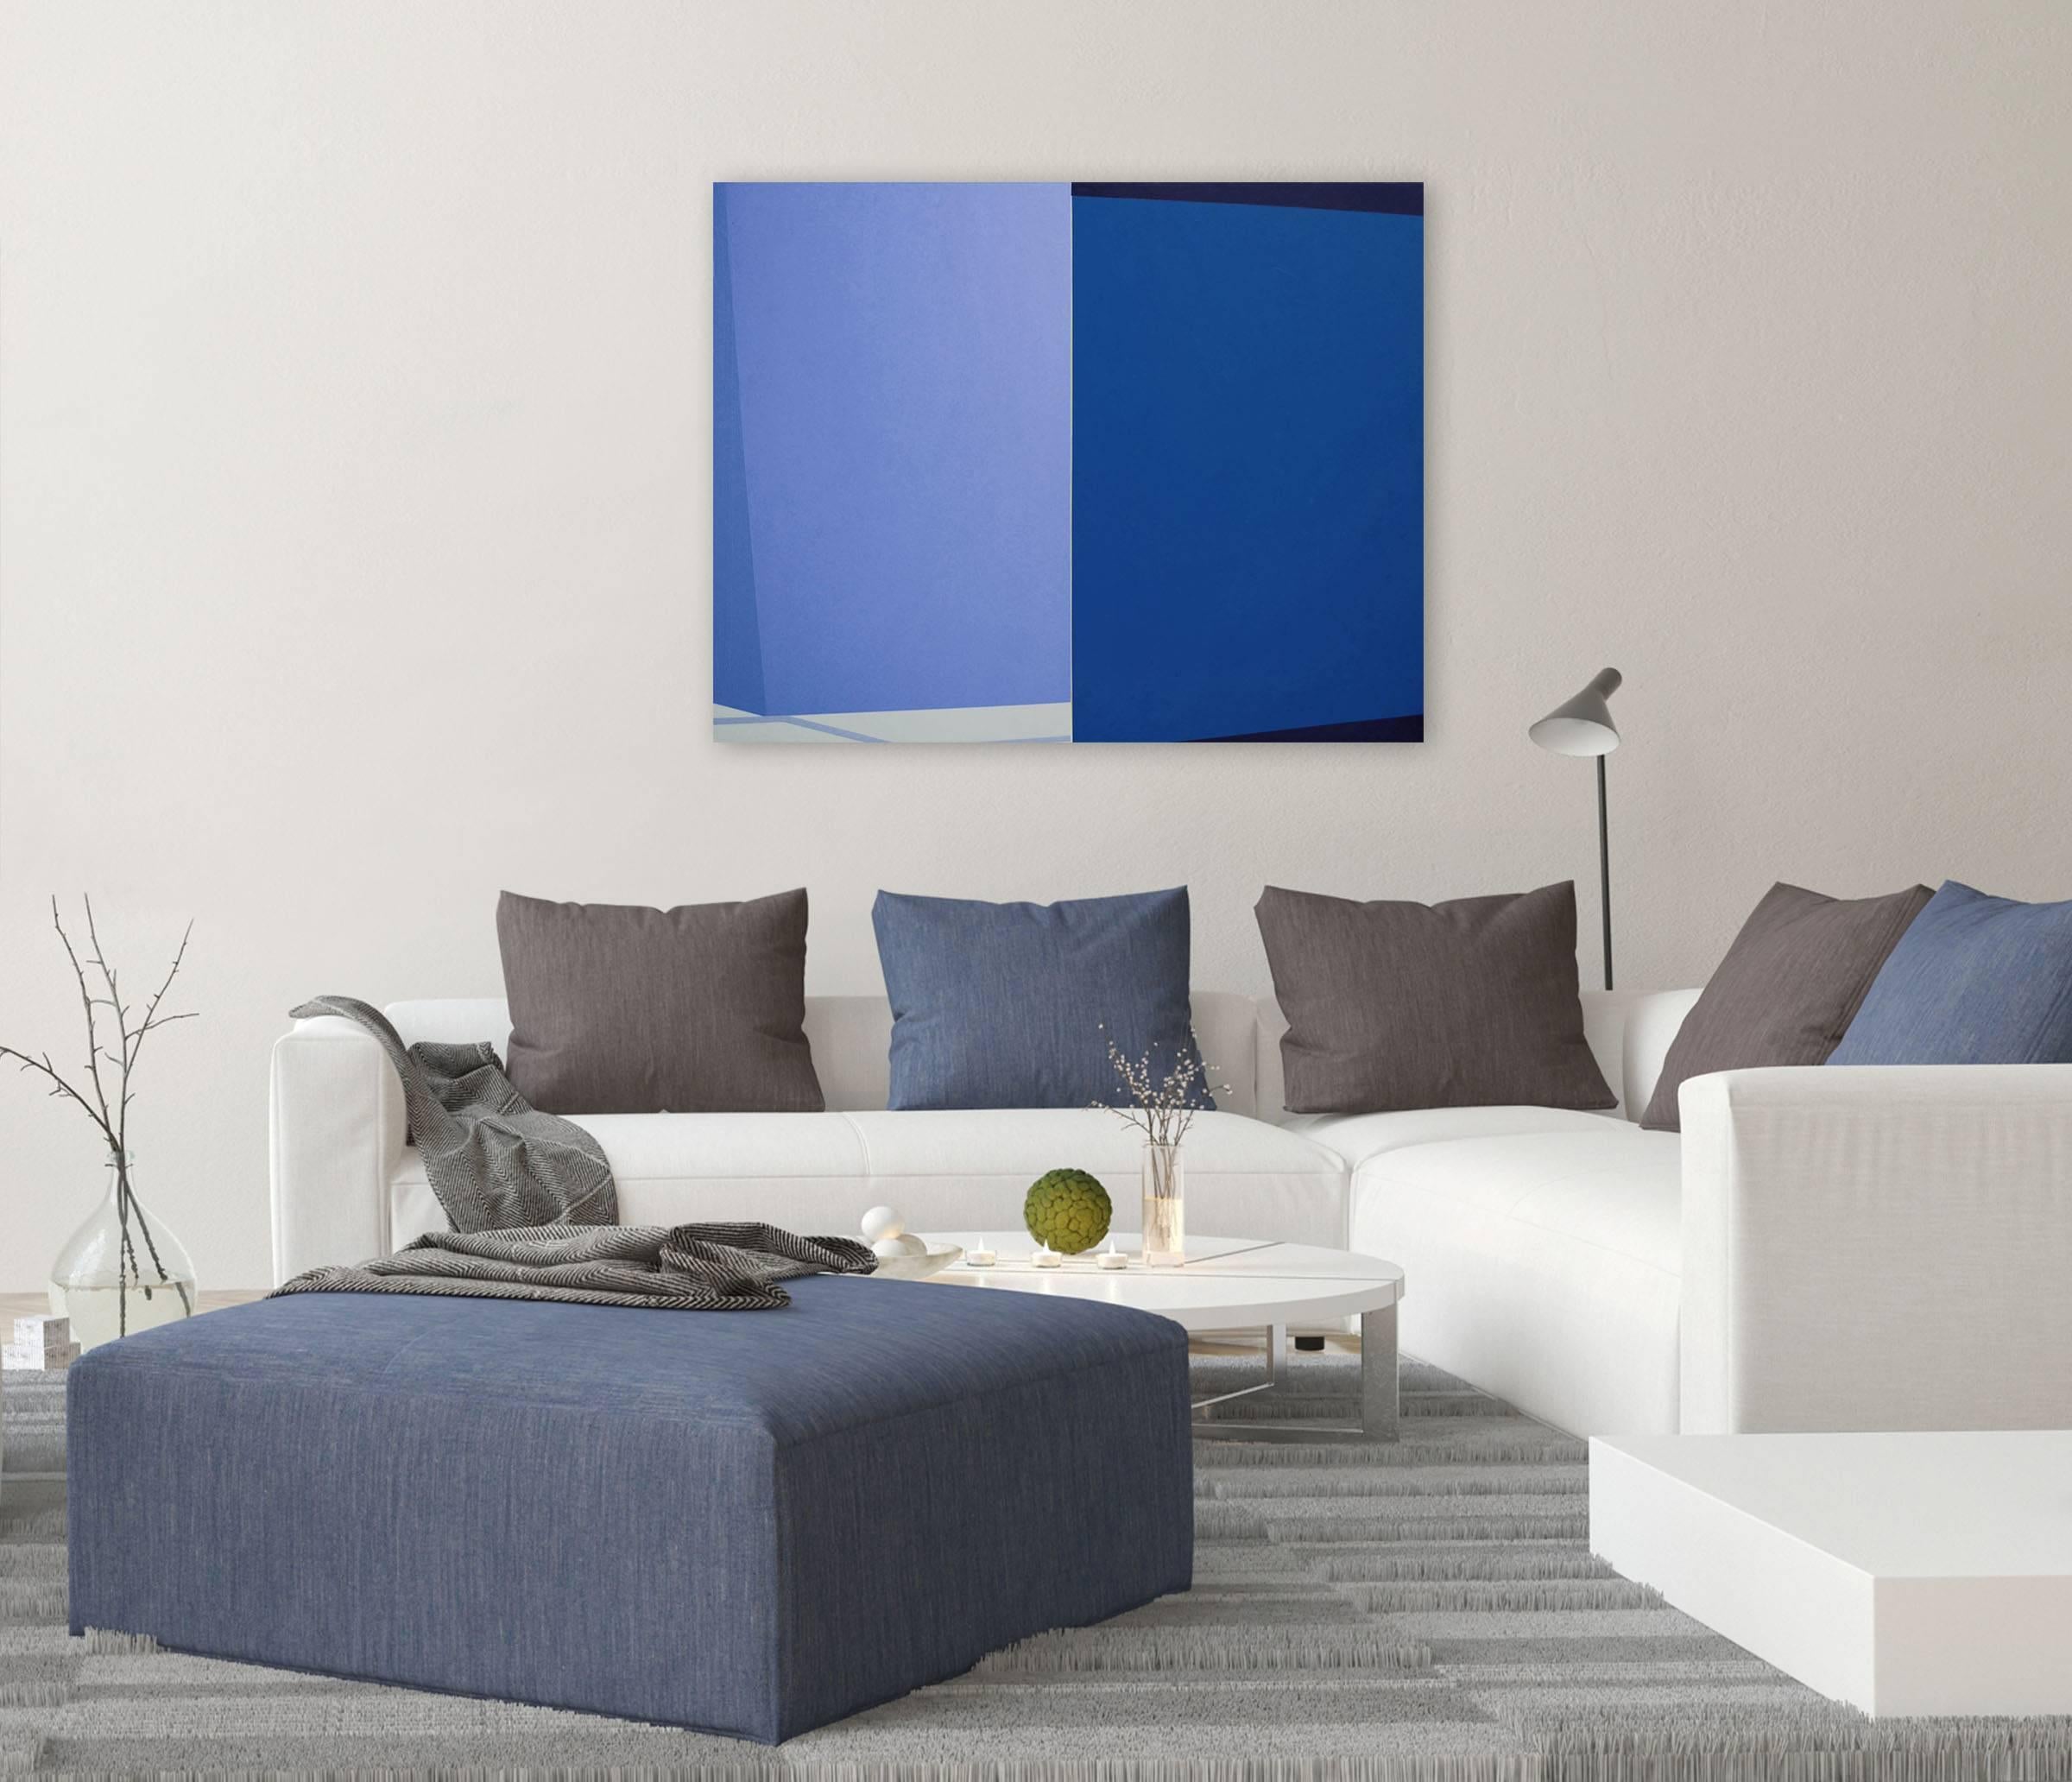 Intersect (bleu) (peinture abstraite) - Painting de Macyn Bolt